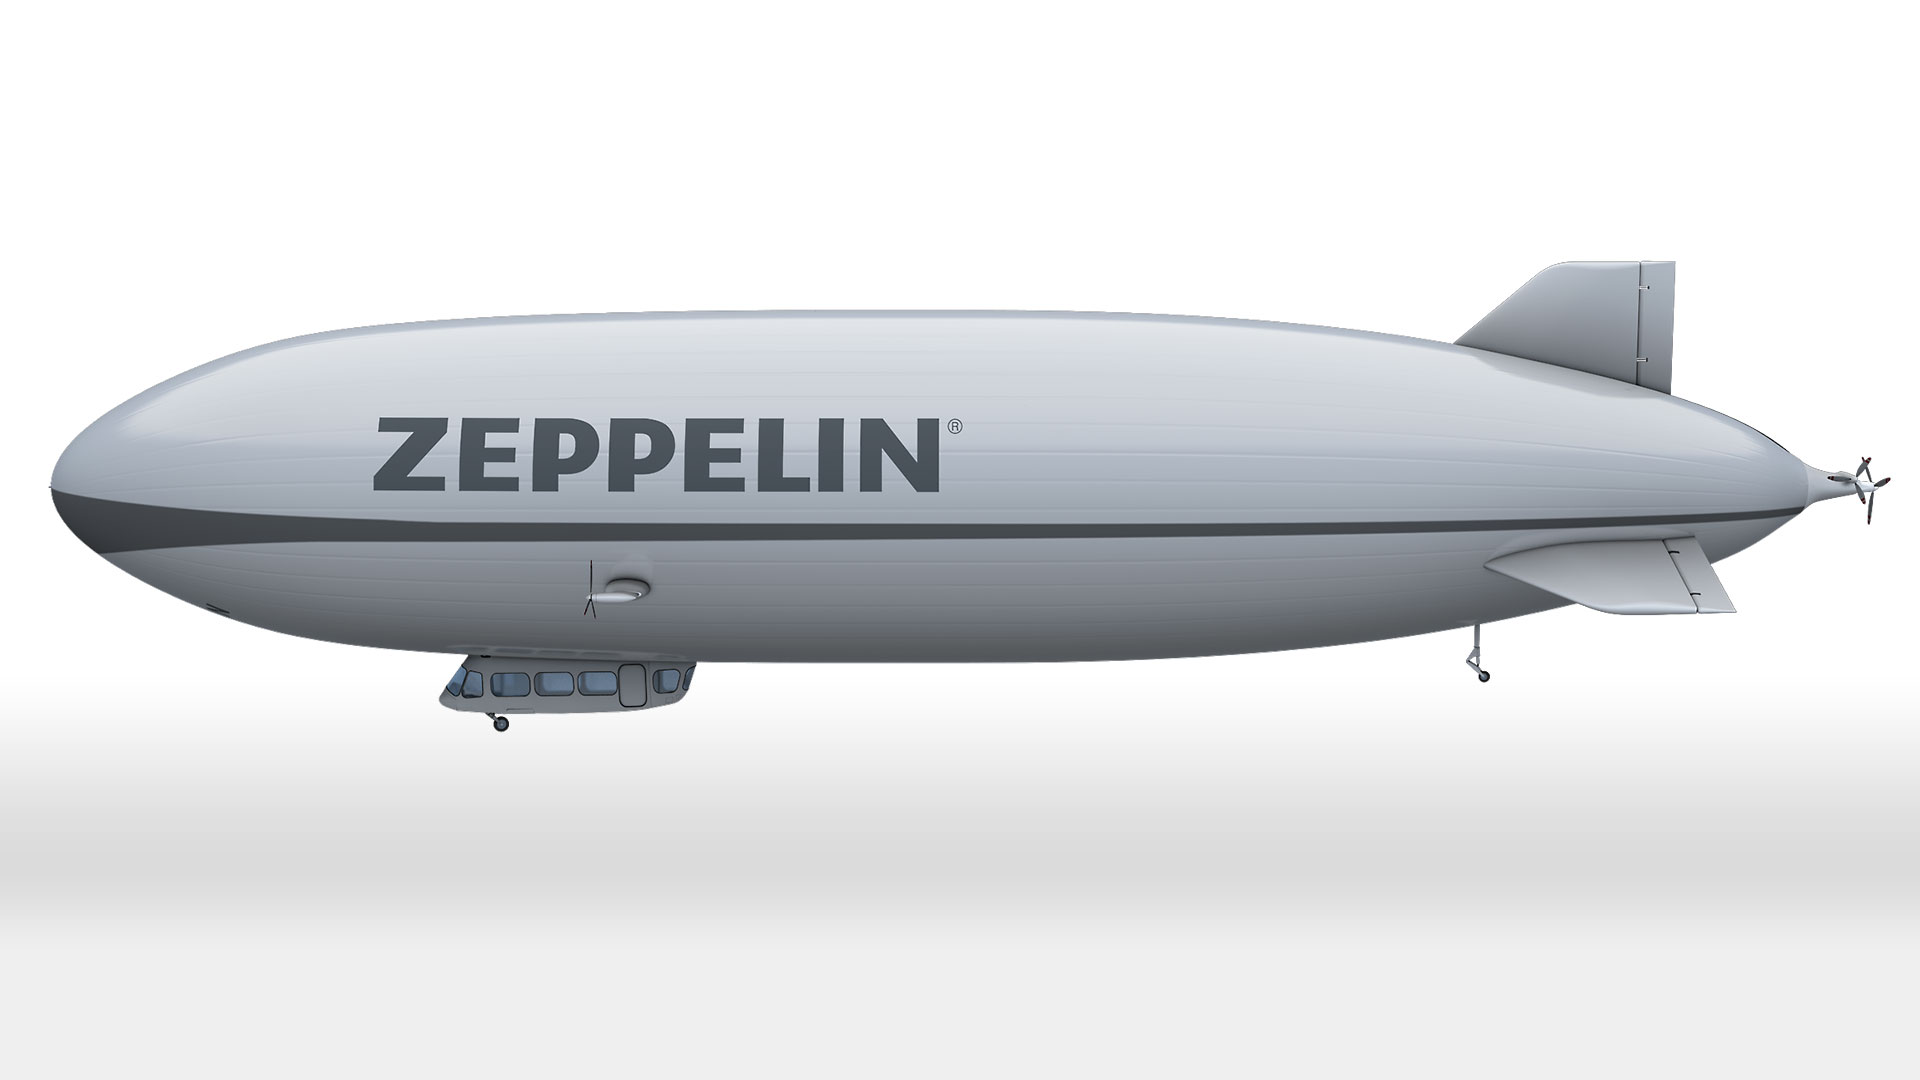 High Resolution Wallpaper | Zeppelin 1920x1080 px